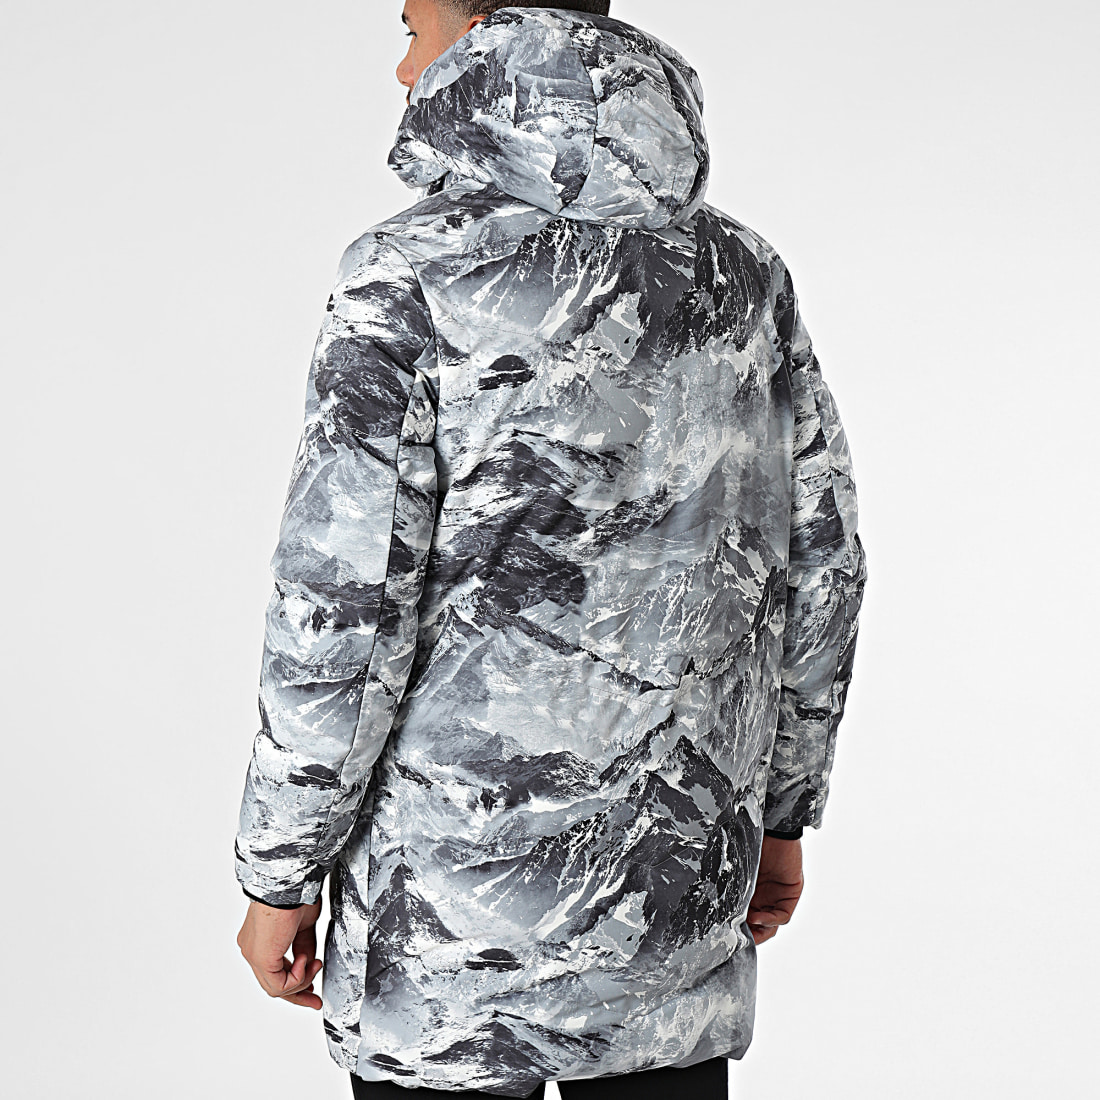 Doudoune chaude grise pour homme avec capuche à fourrure. Tendance hiver  homme 2019. De la marque FRILIVIN.